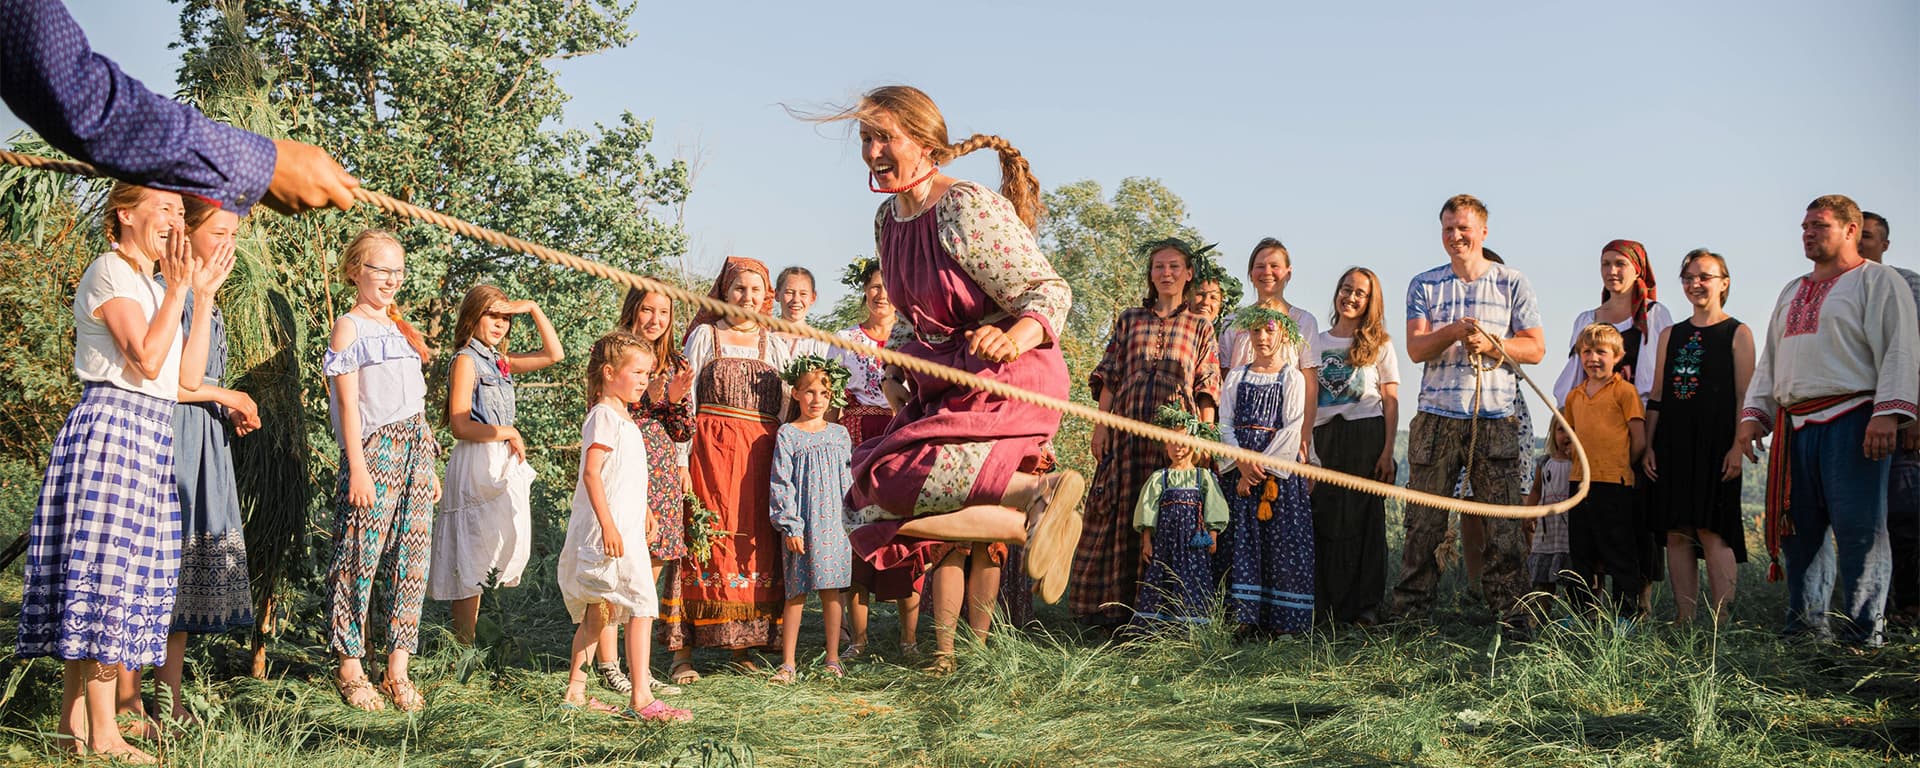 Лесная Поляна — <br>это возрождение народных традиций